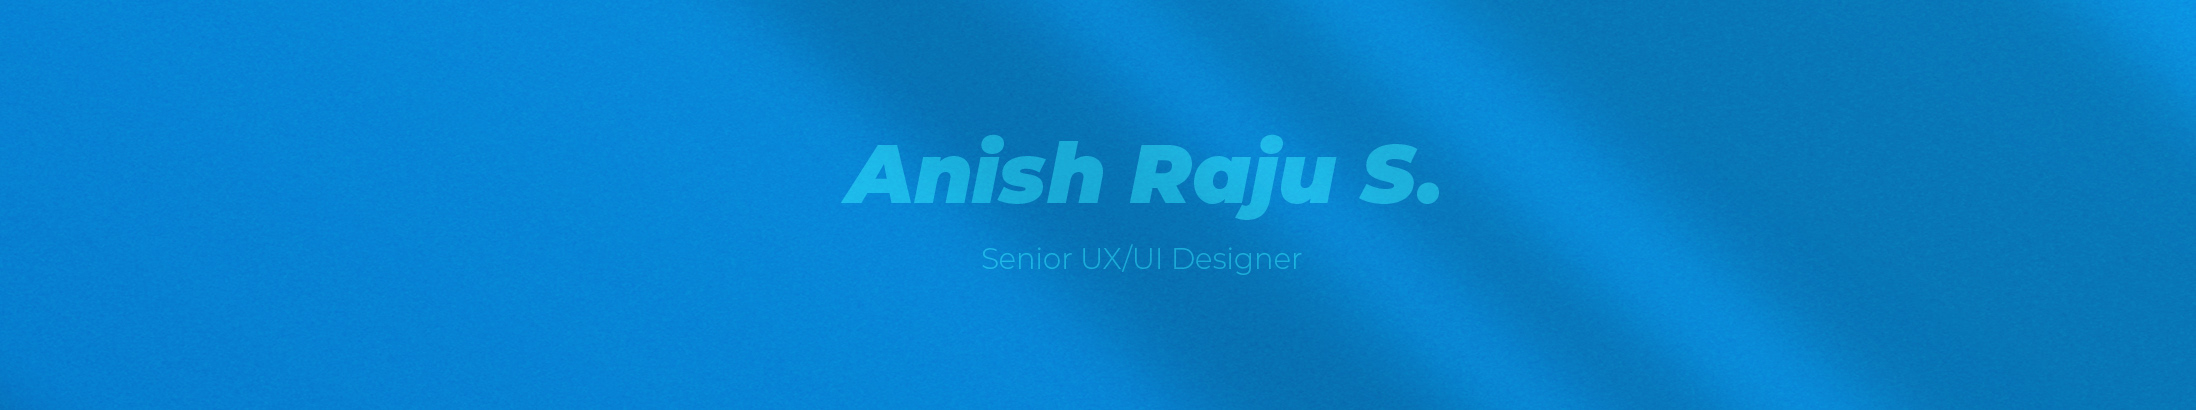 Profil-Banner von Anish Raju S